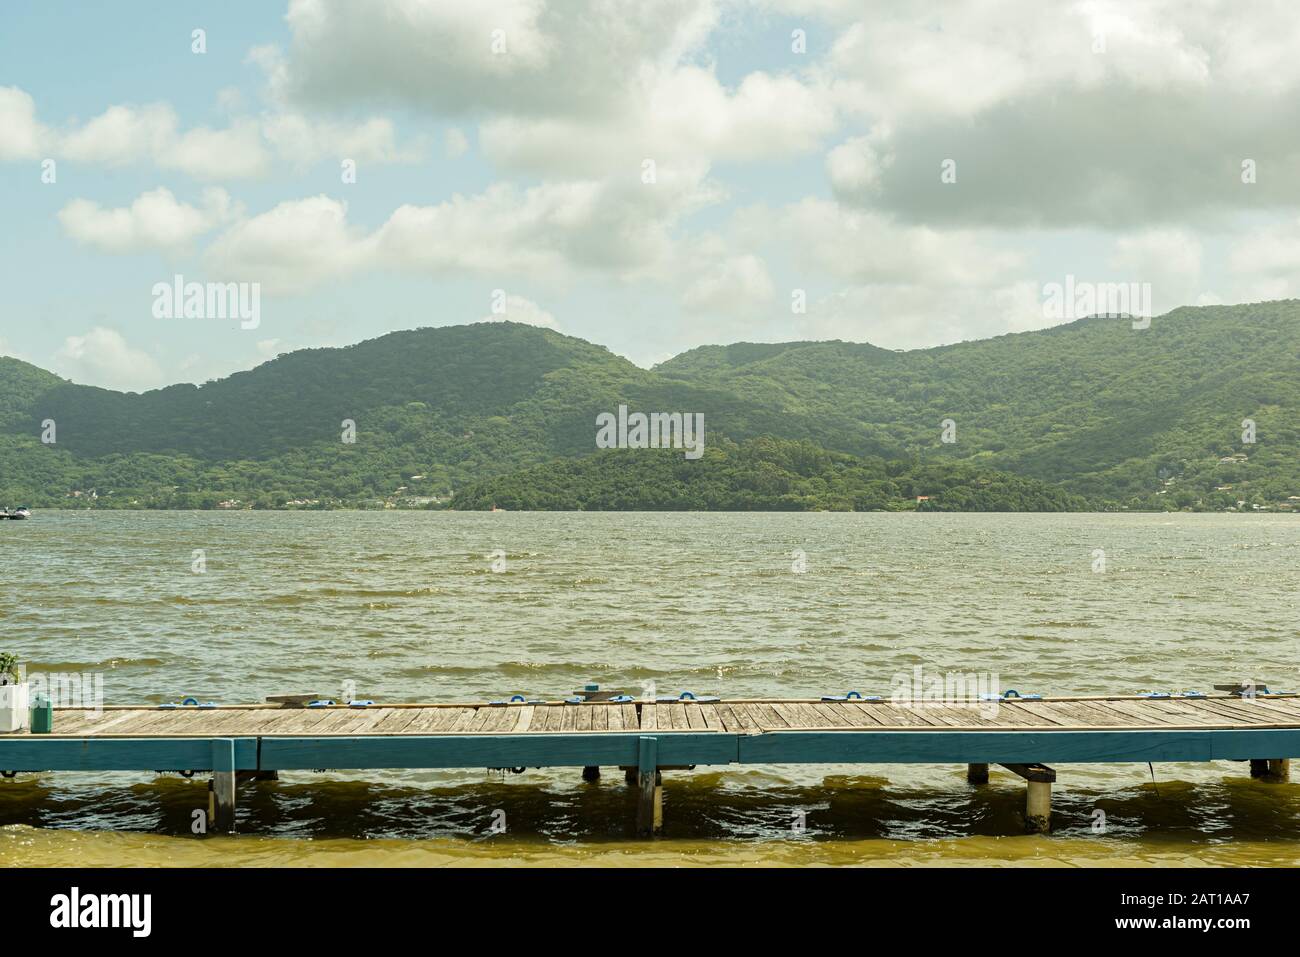 Holzsteg am See Lagoa da Conceição in Florianopolis, Brasilien. Mit schöner Landschaft von Bergen im Hintergrund. Stockfoto